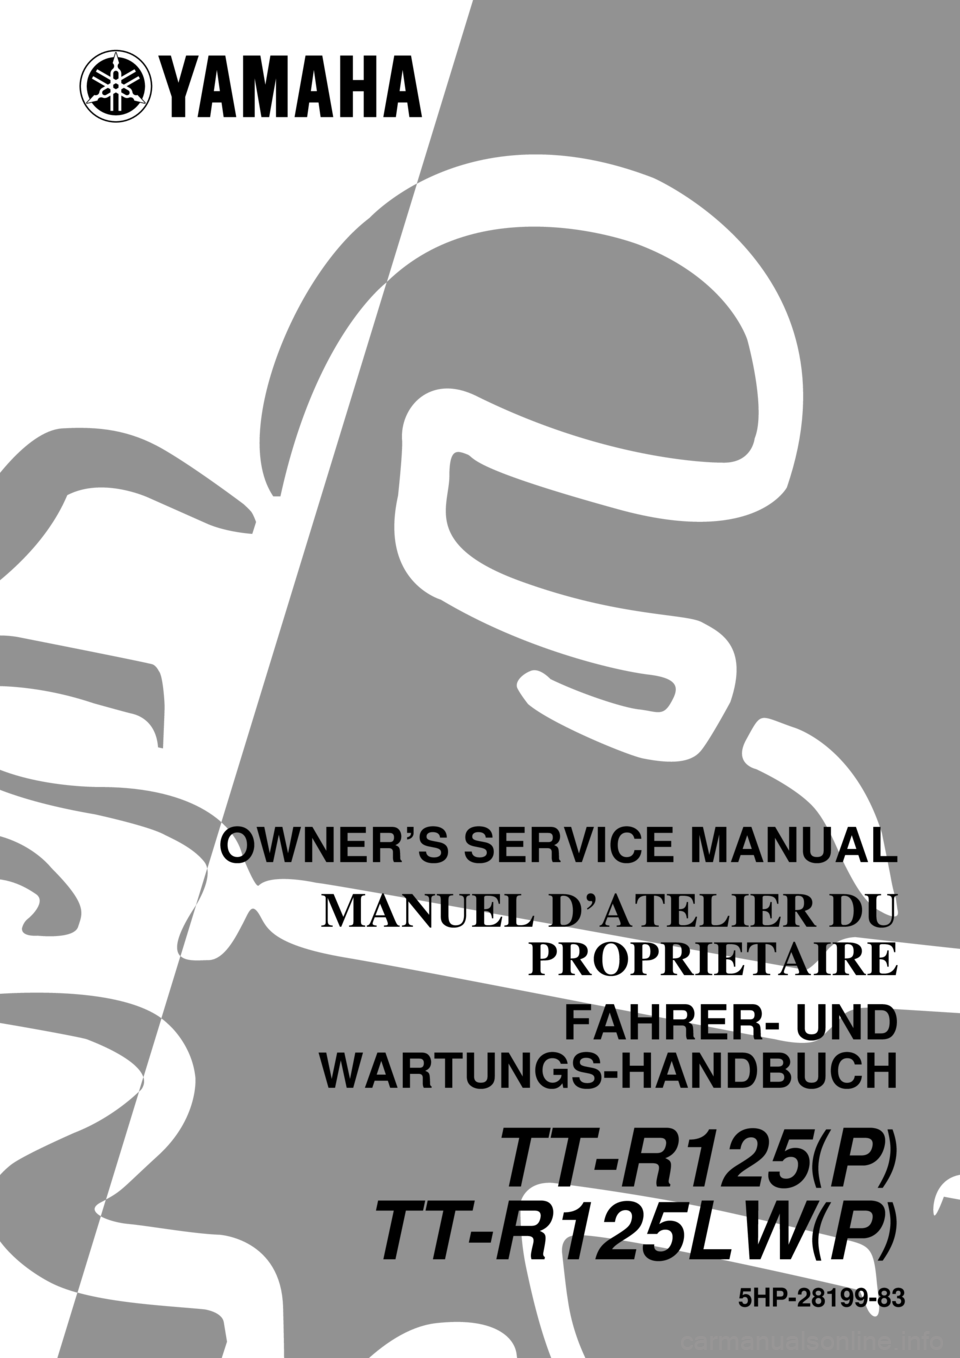 YAMAHA TTR125 2002  Betriebsanleitungen (in German) 5HP-28199-83
TT-R125(P)
TT-R125LW(P)
OWNER’S SERVICE MANUAL
MANUEL D’ATELIER DU
PROPRIETAIRE
FAHRER- UND
WARTUNGS-HANDBUCH 